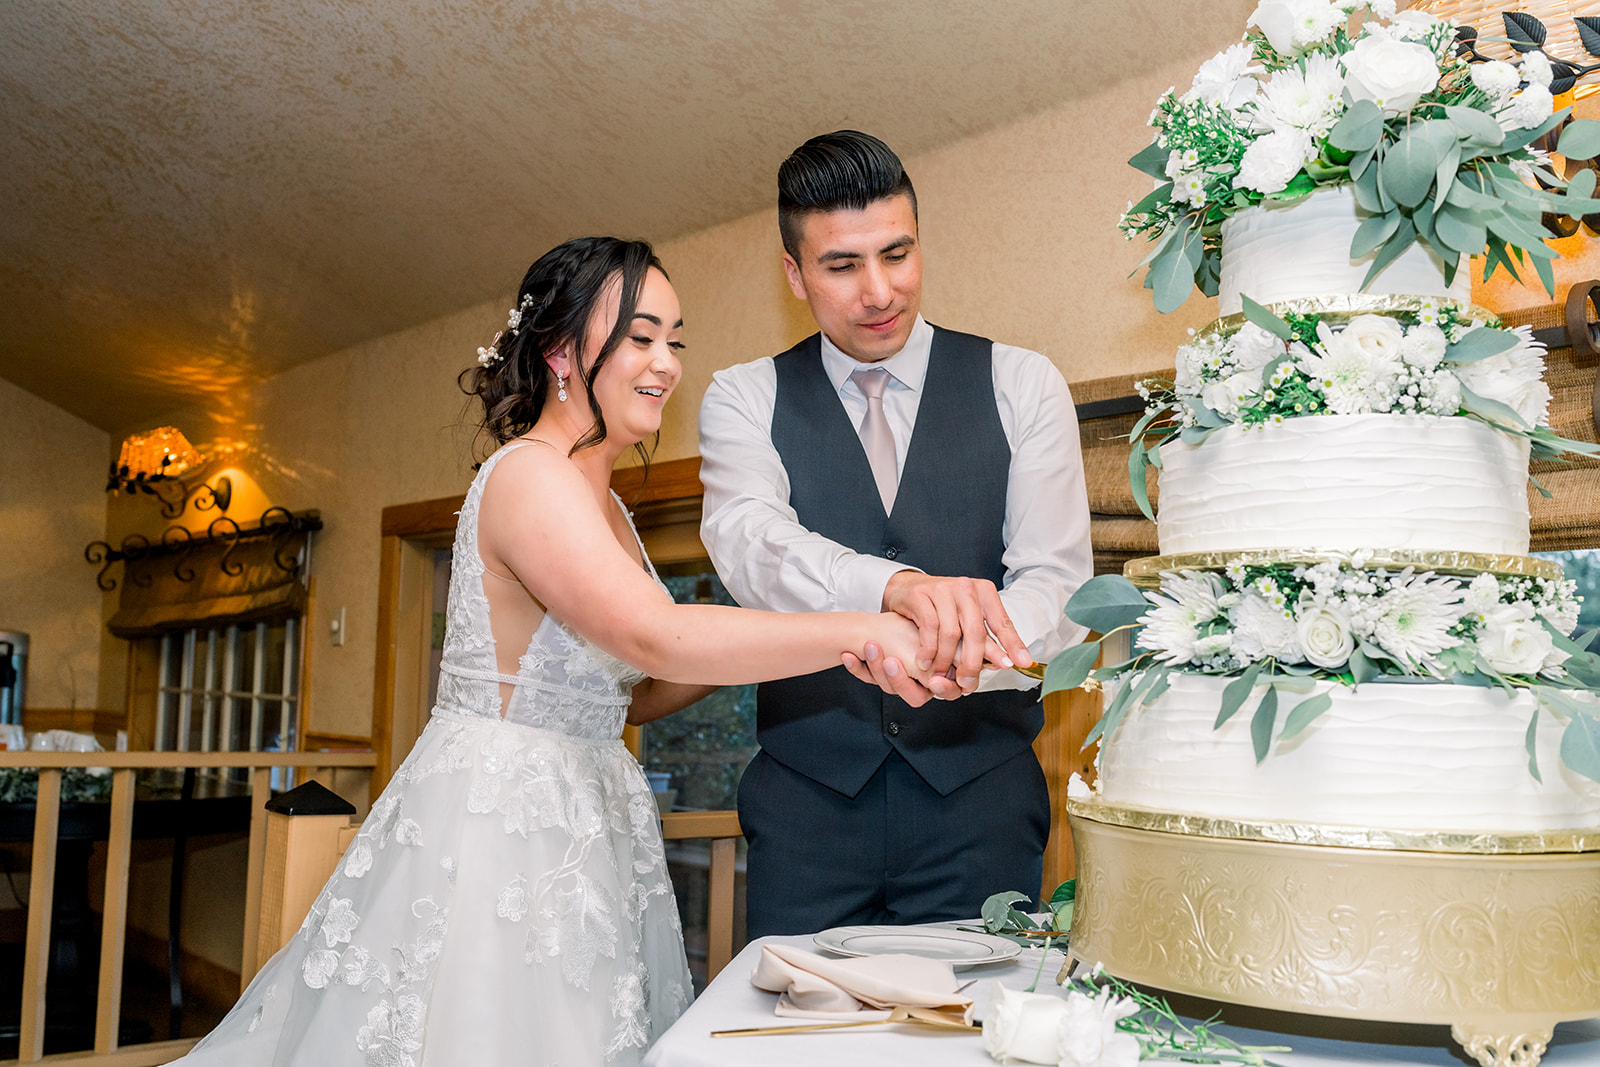 Cake cutting Union Hill Inn Sonora, CA wedding 